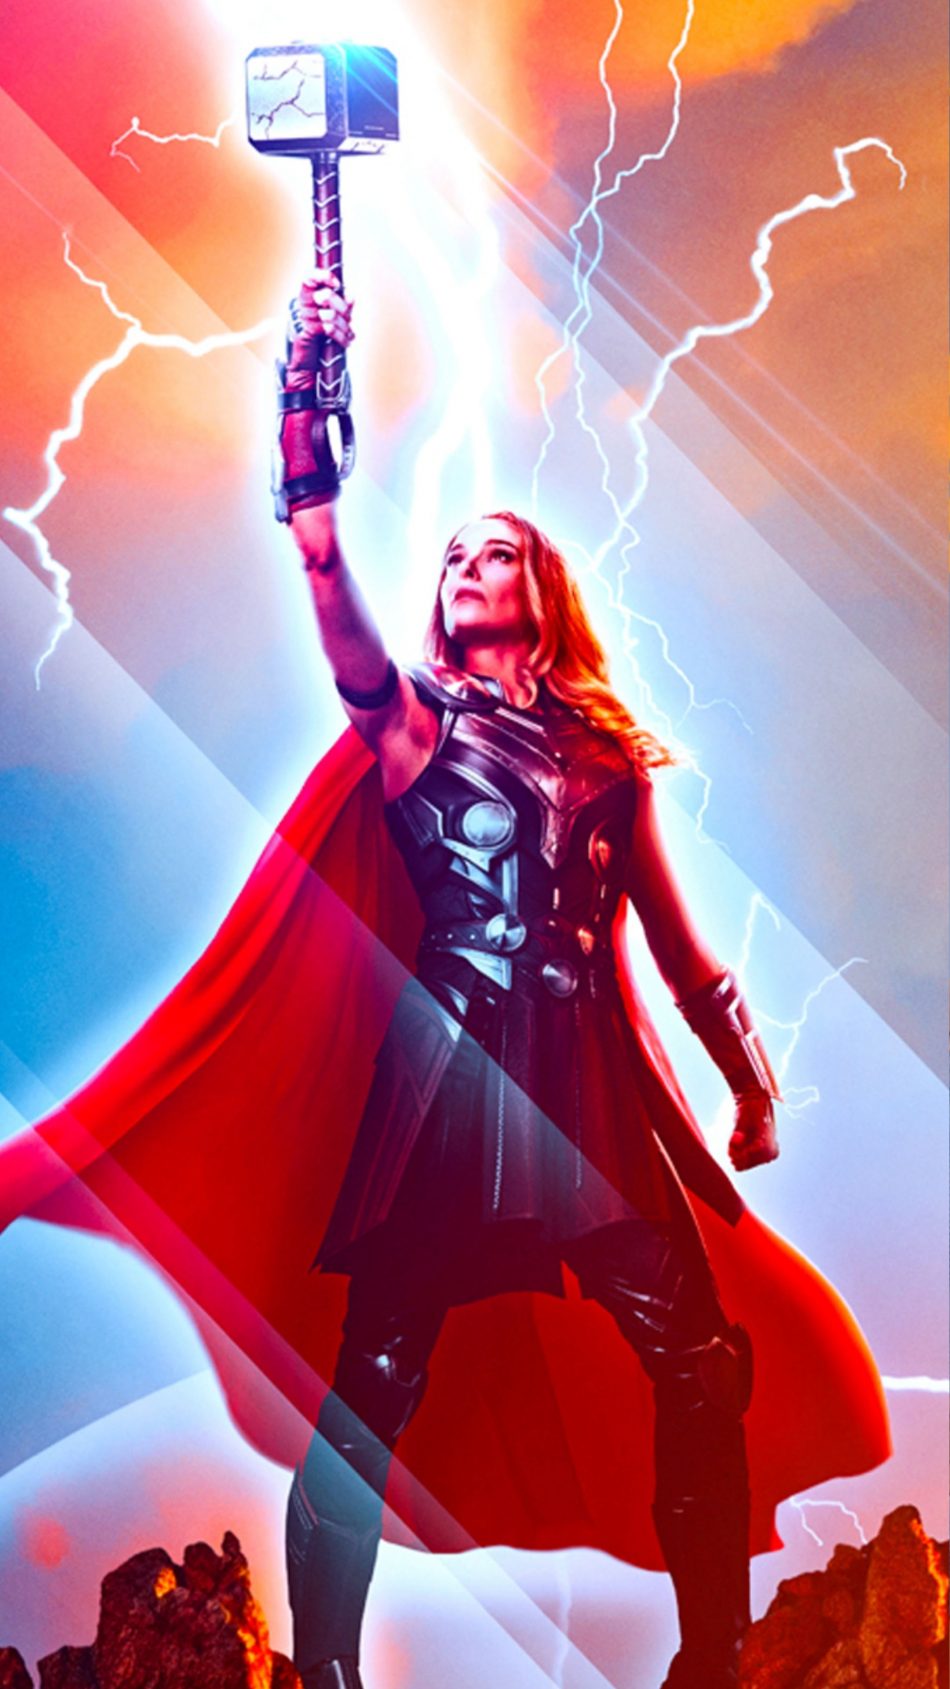 Natalie-Portman-In-Thor-Love-And-Thunder-4K-Ultra-HD-Mobile-Wallpaper-950x1689.jpg